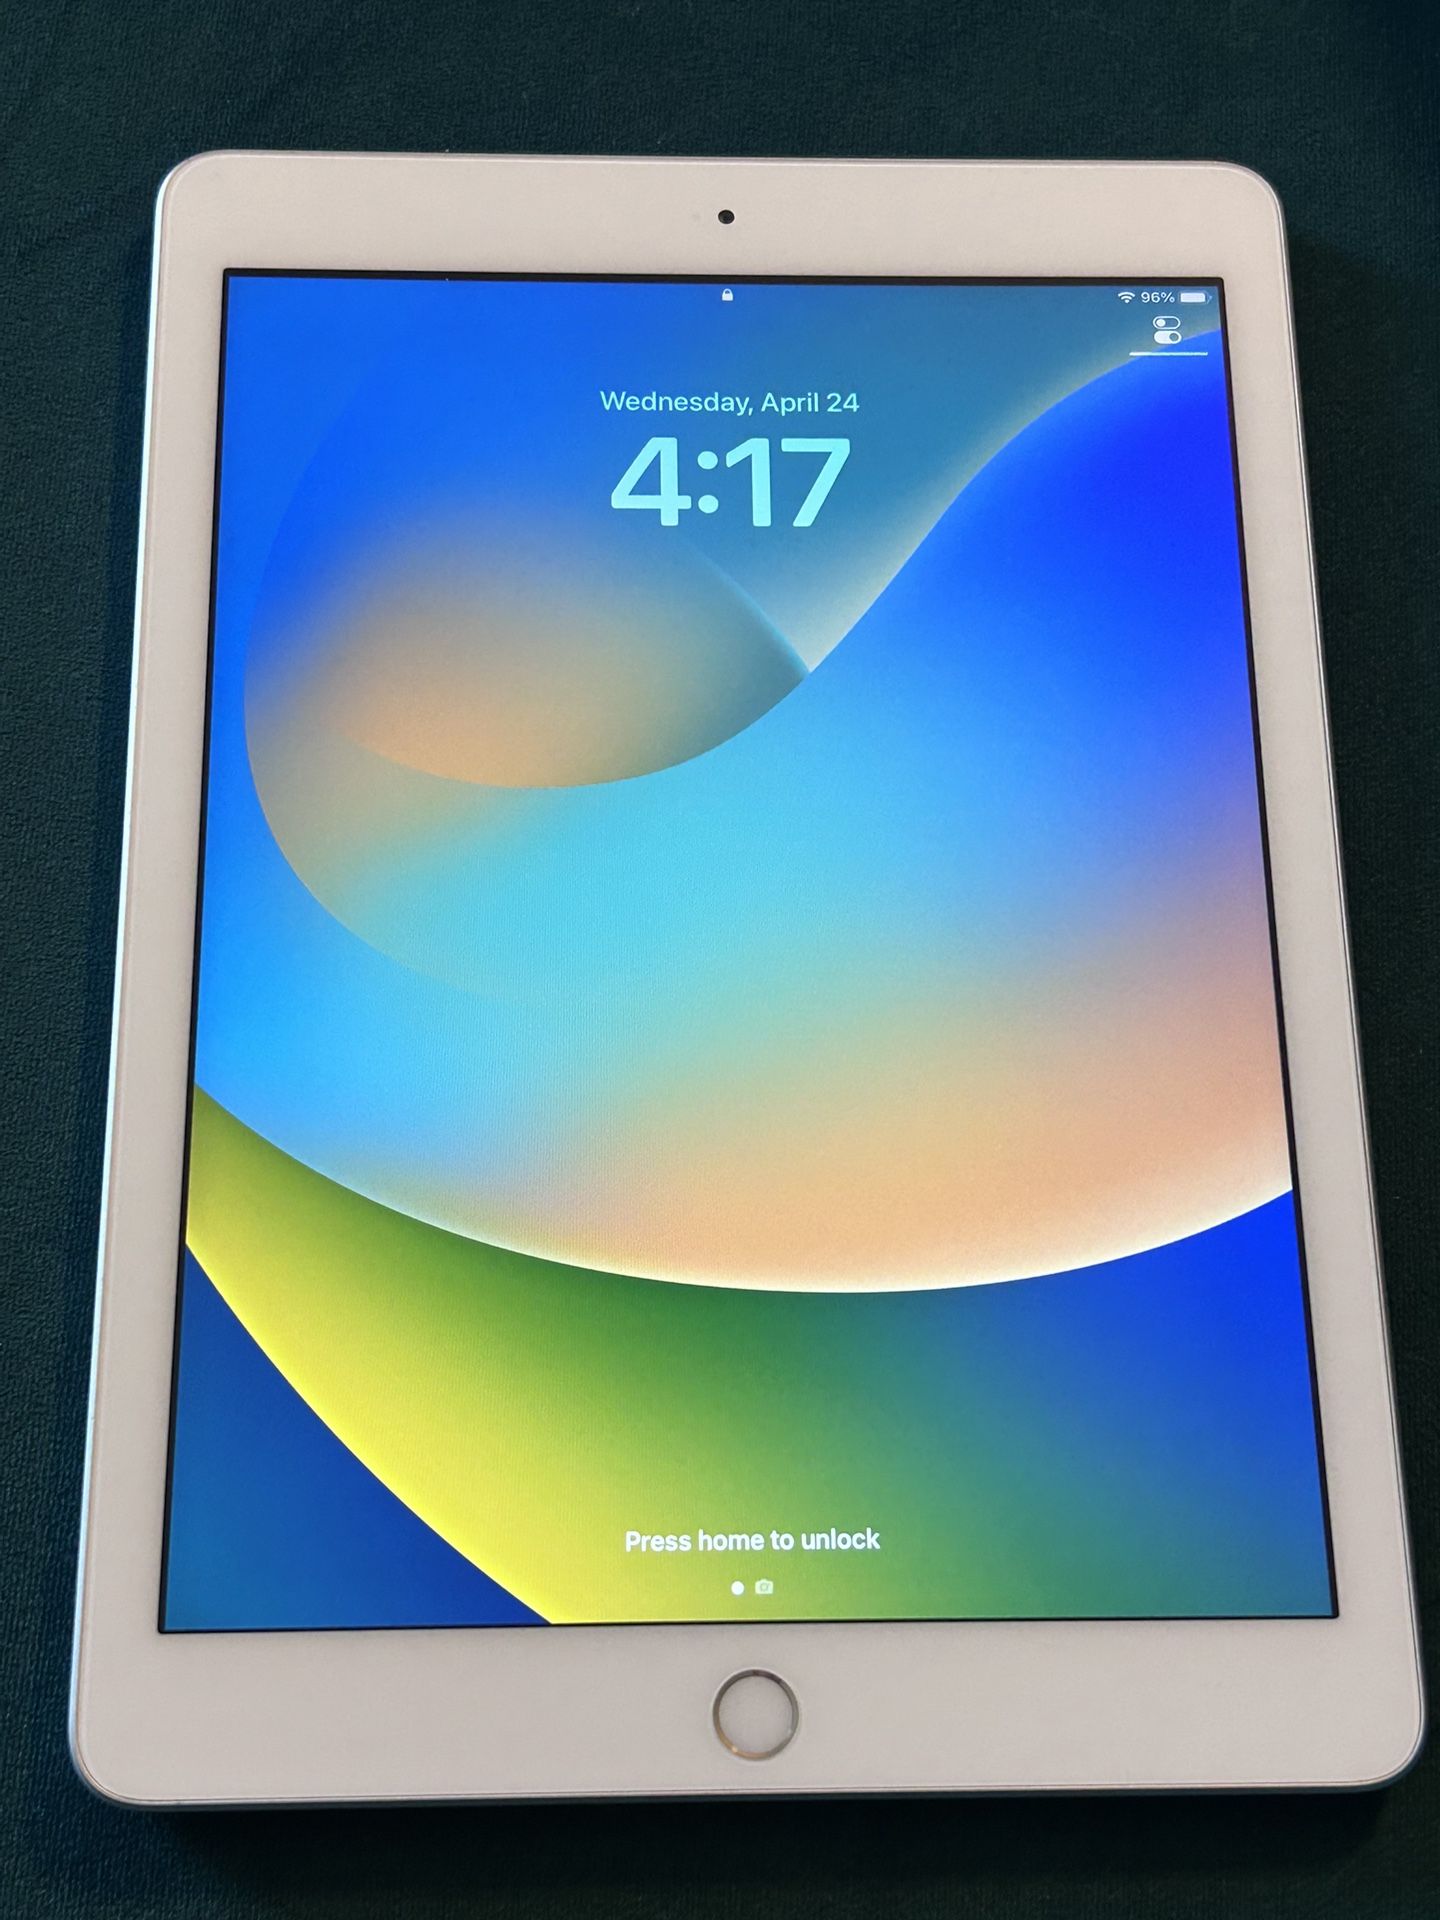 Apple iPad 9.7" Wifi 128GB 2017 Model - Silver MP2J2LL/A  unlocked Like New